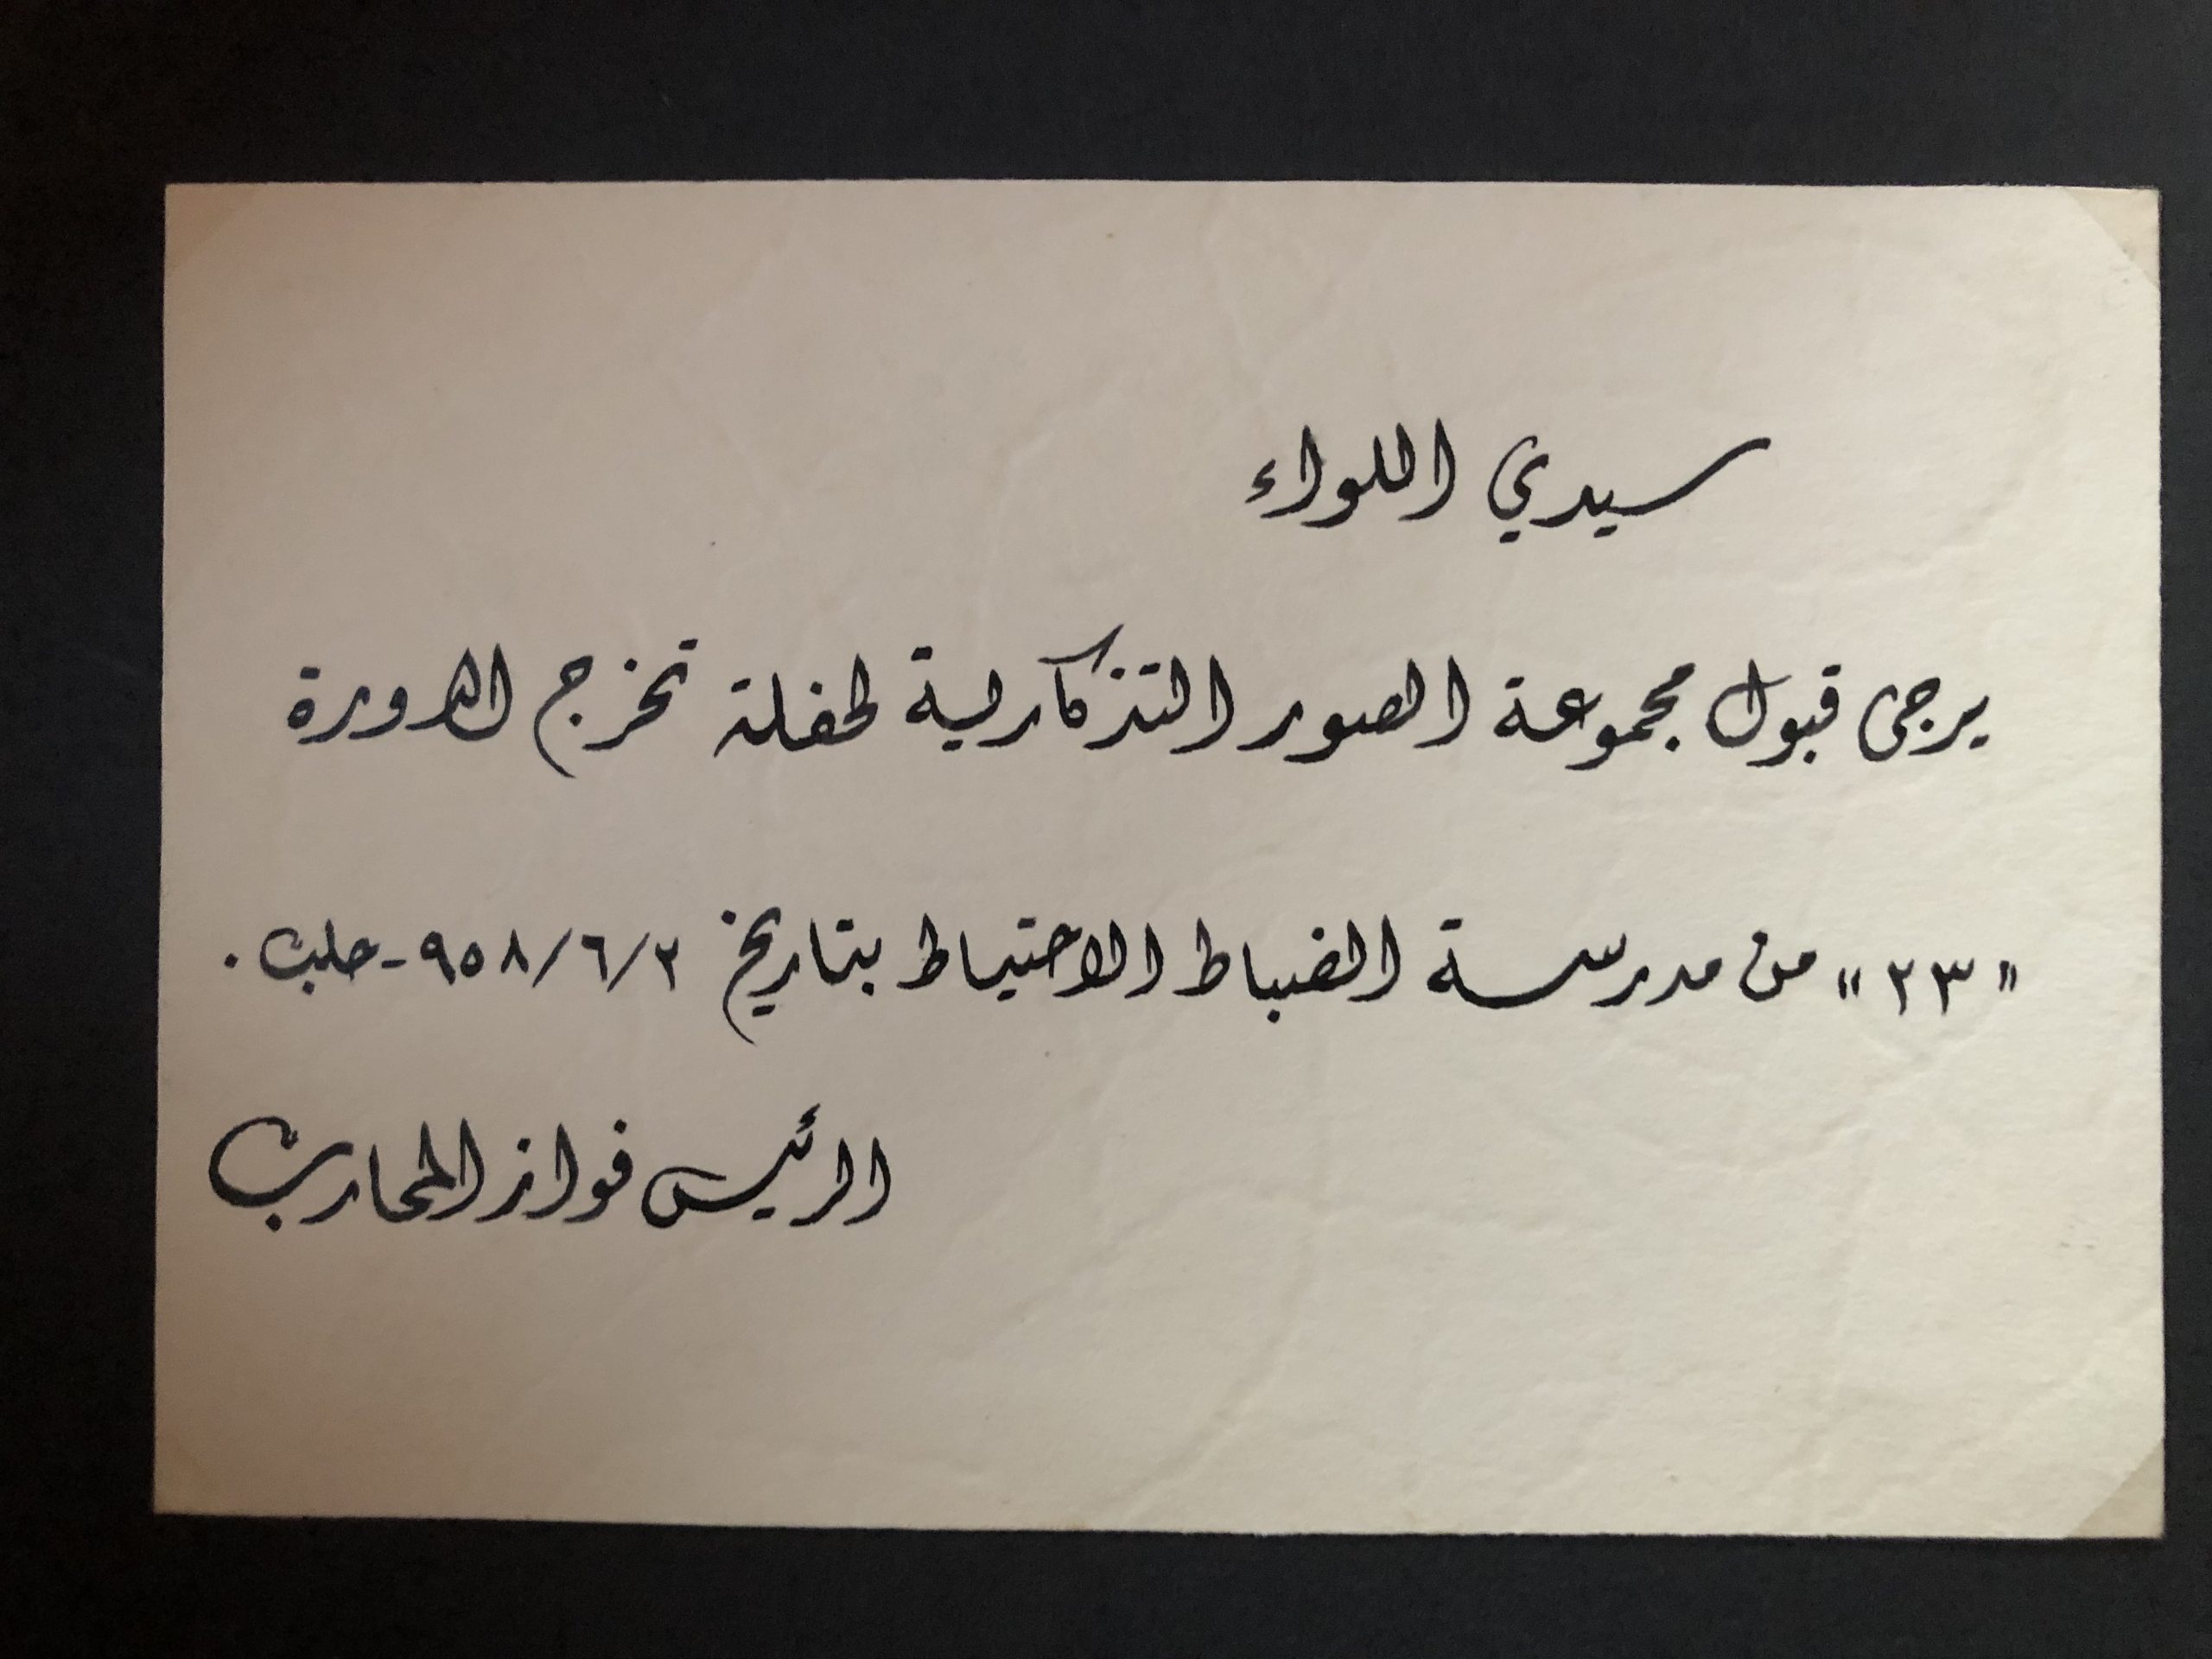 التاريخ السوري المعاصر - بطاقة إهداء صور حفل تخريج ضباط الاحتياط إلى جمال الفيصل 1958